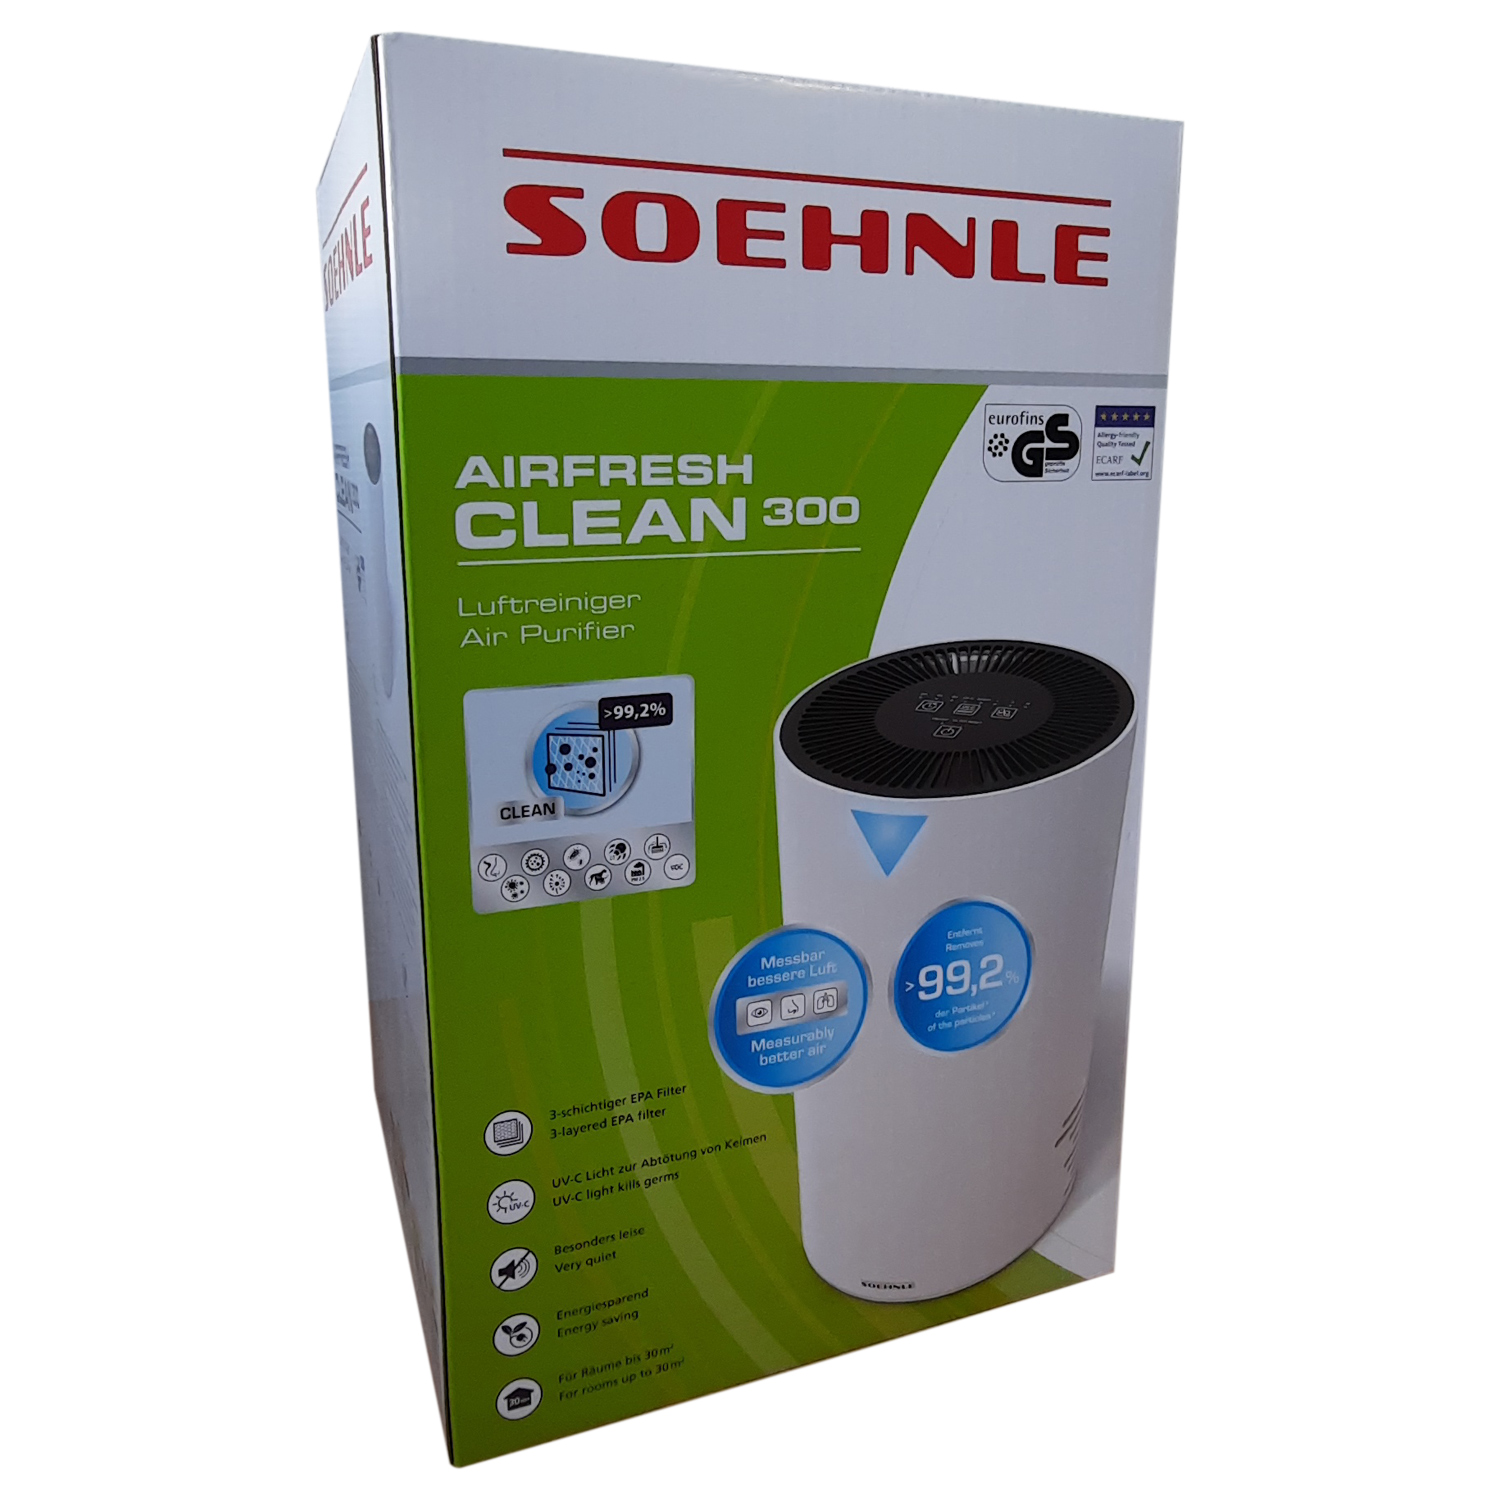 Soehnle Airfresh Clean 300 Luftreiniger mit 4-stufigem Reinigungssystem von Soehnle